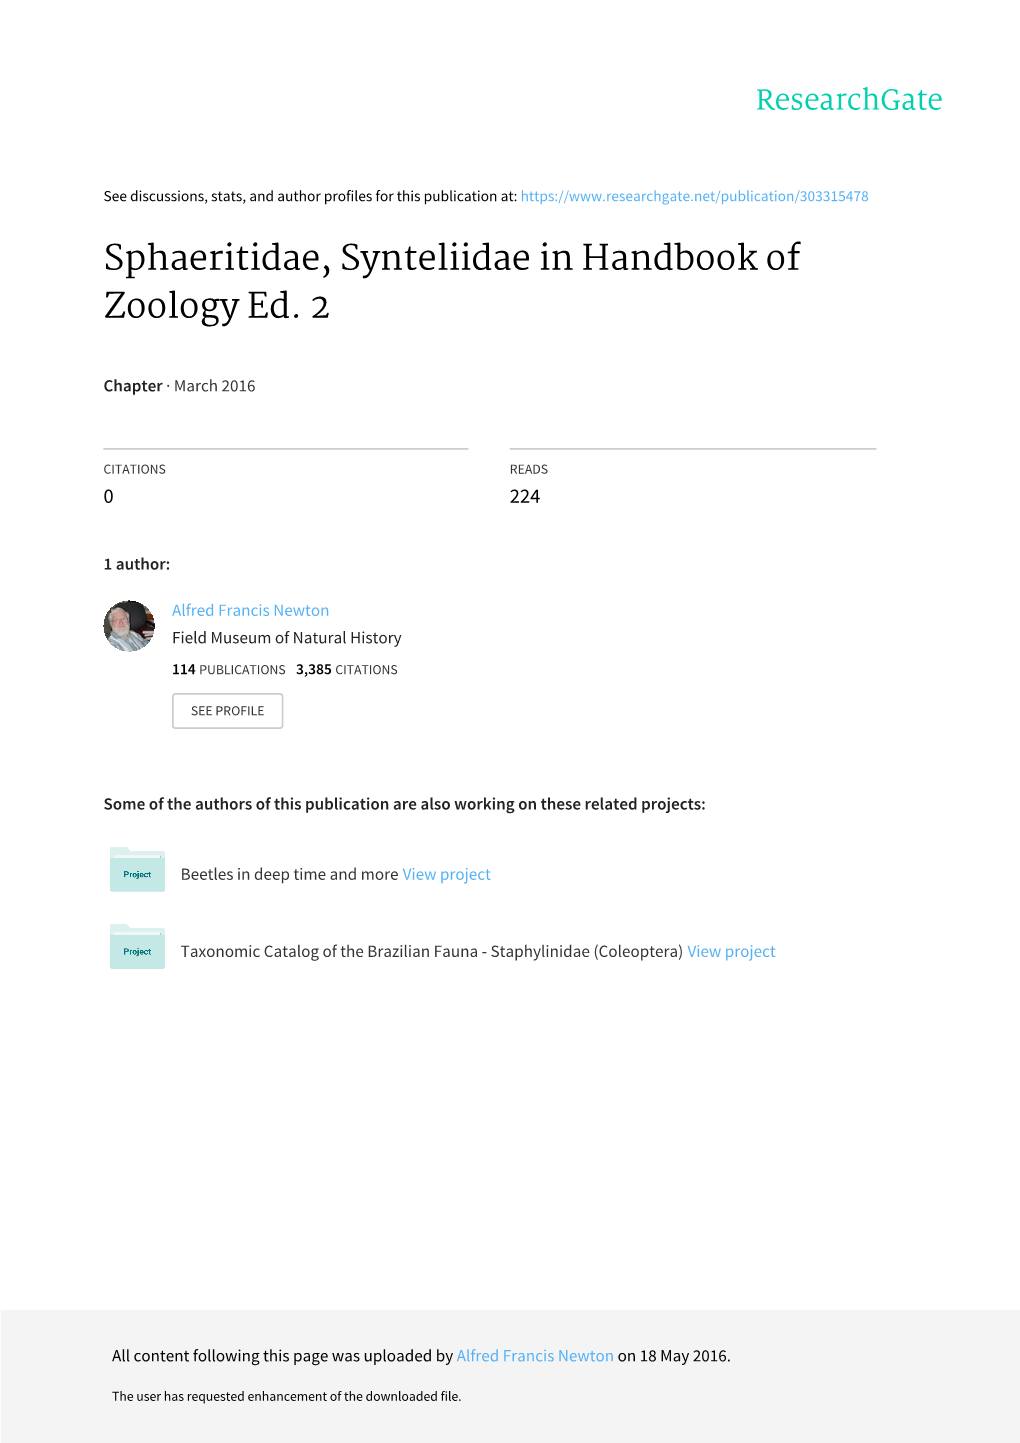 Sphaeritidae, Synteliidae in Handbook of Zoology Ed. 2